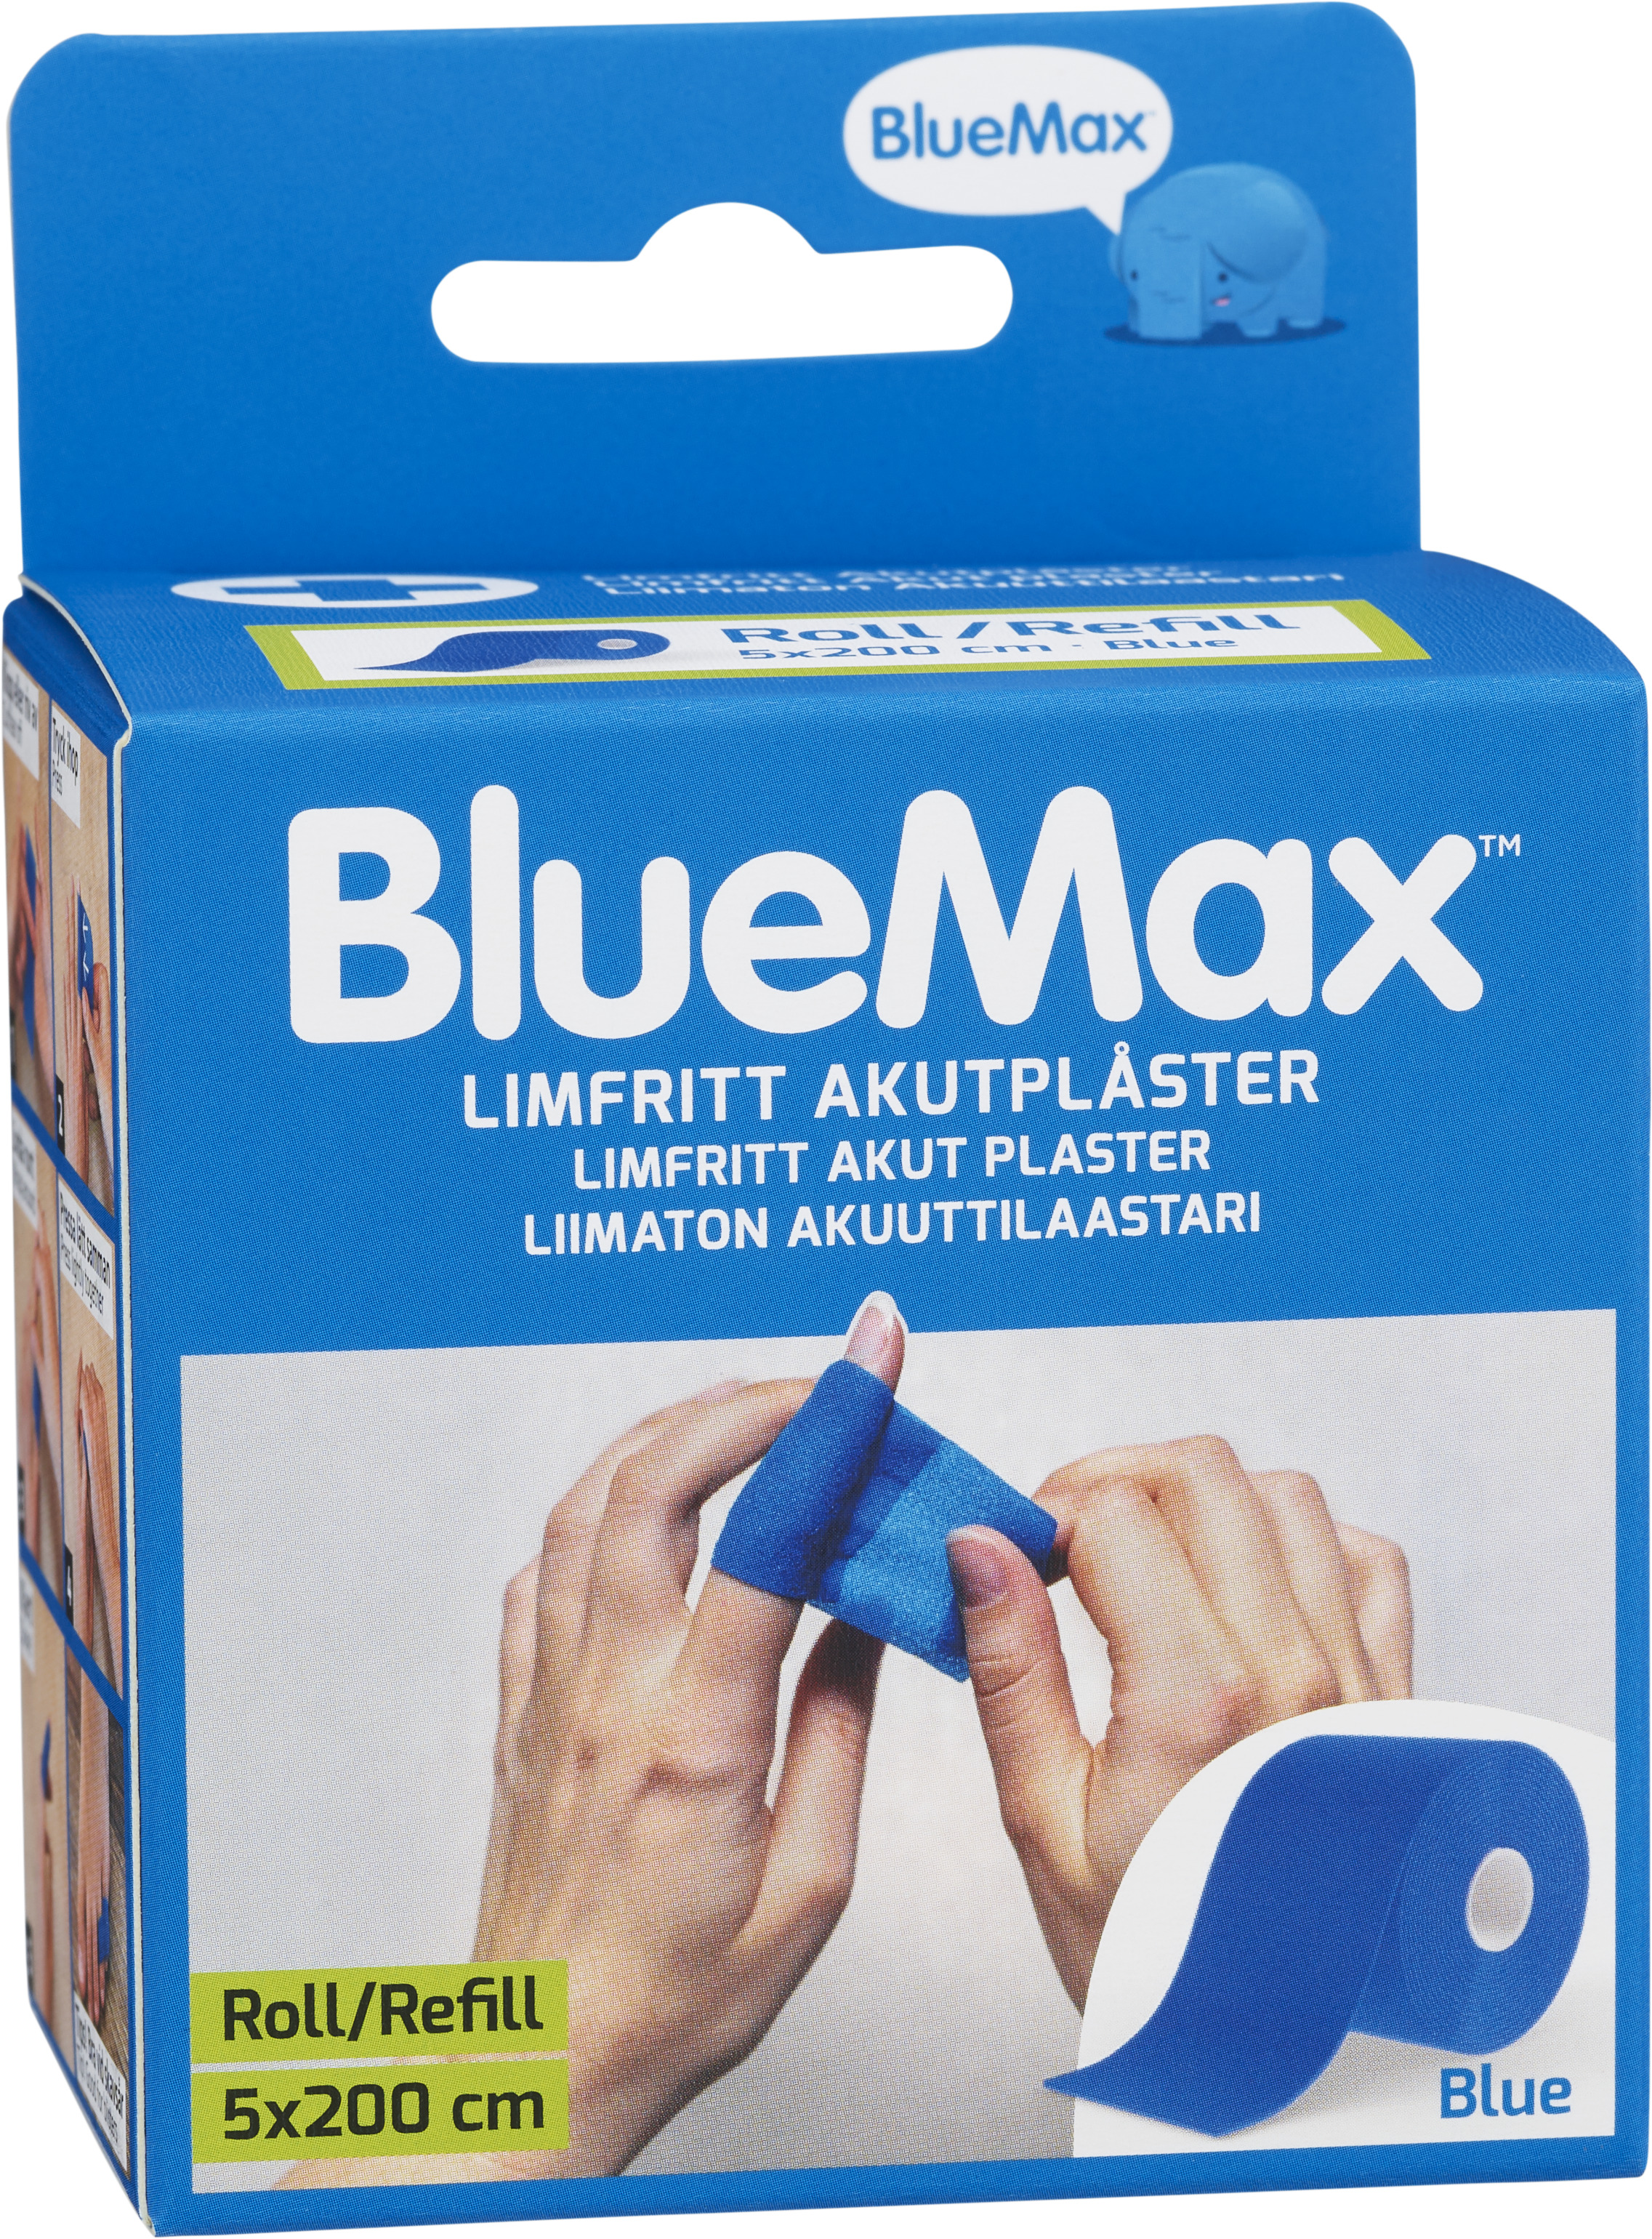 BlueMax Limfritt Akutplåster Refill 5x200cm Blå 1 st